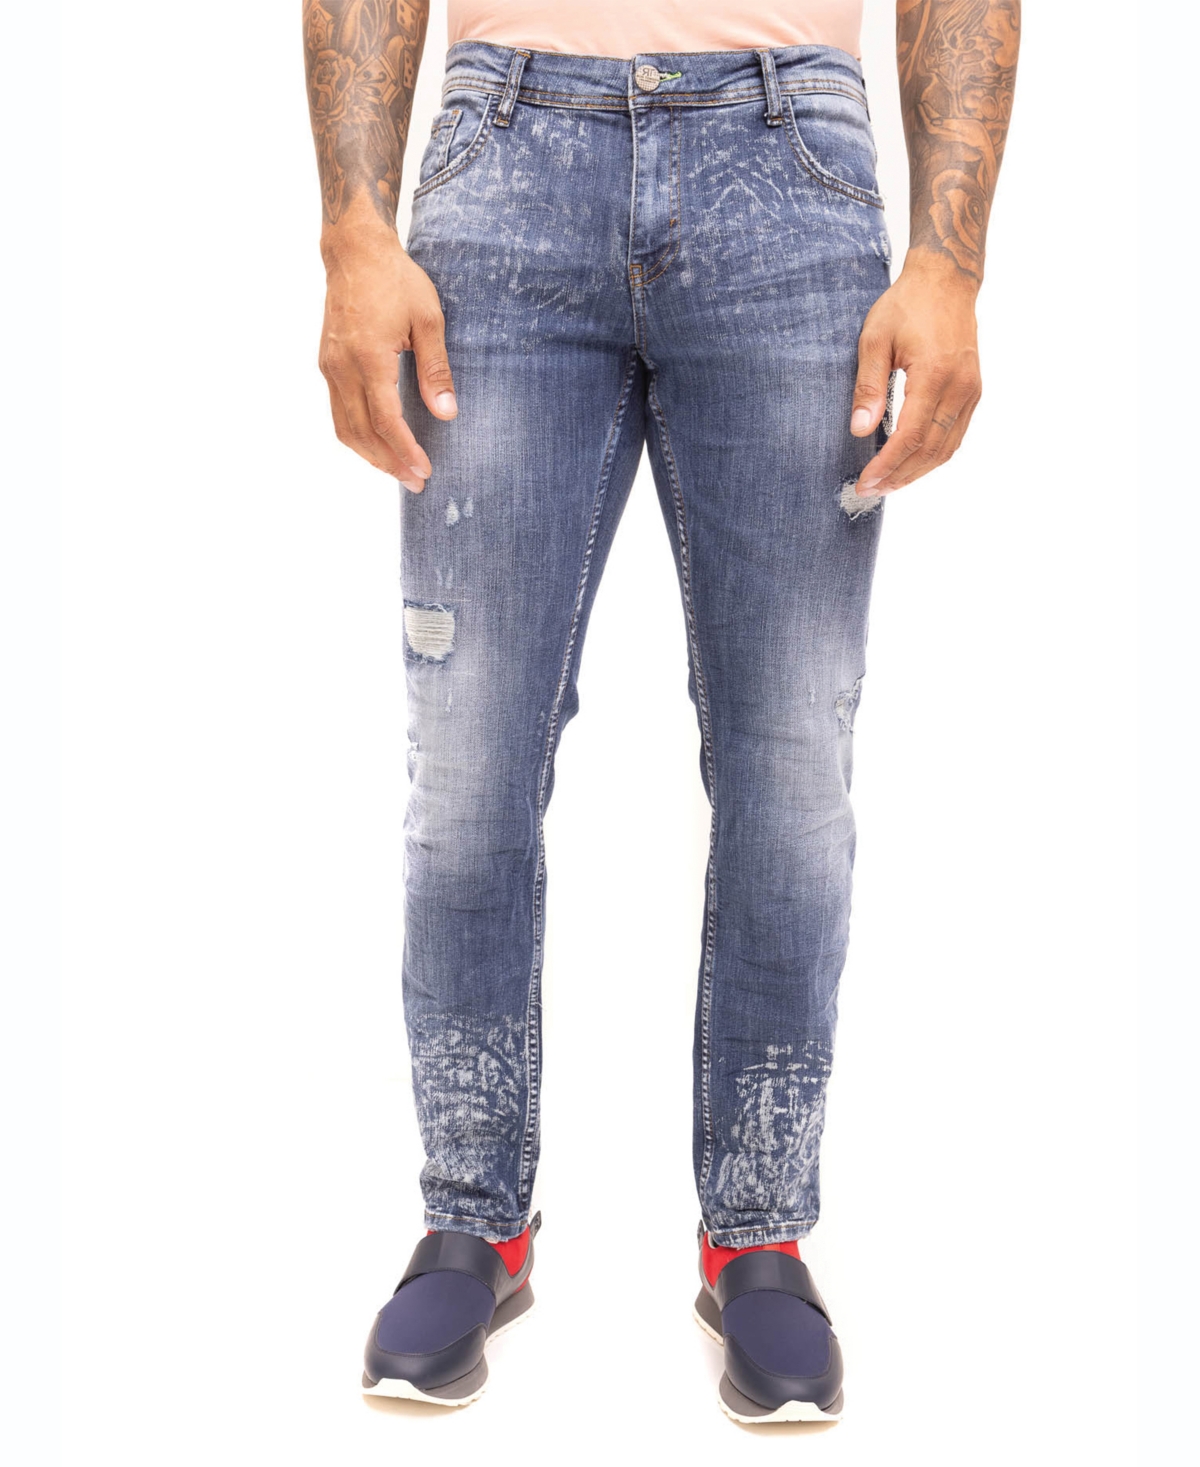 Men's Modern Money Jeans - Indigo